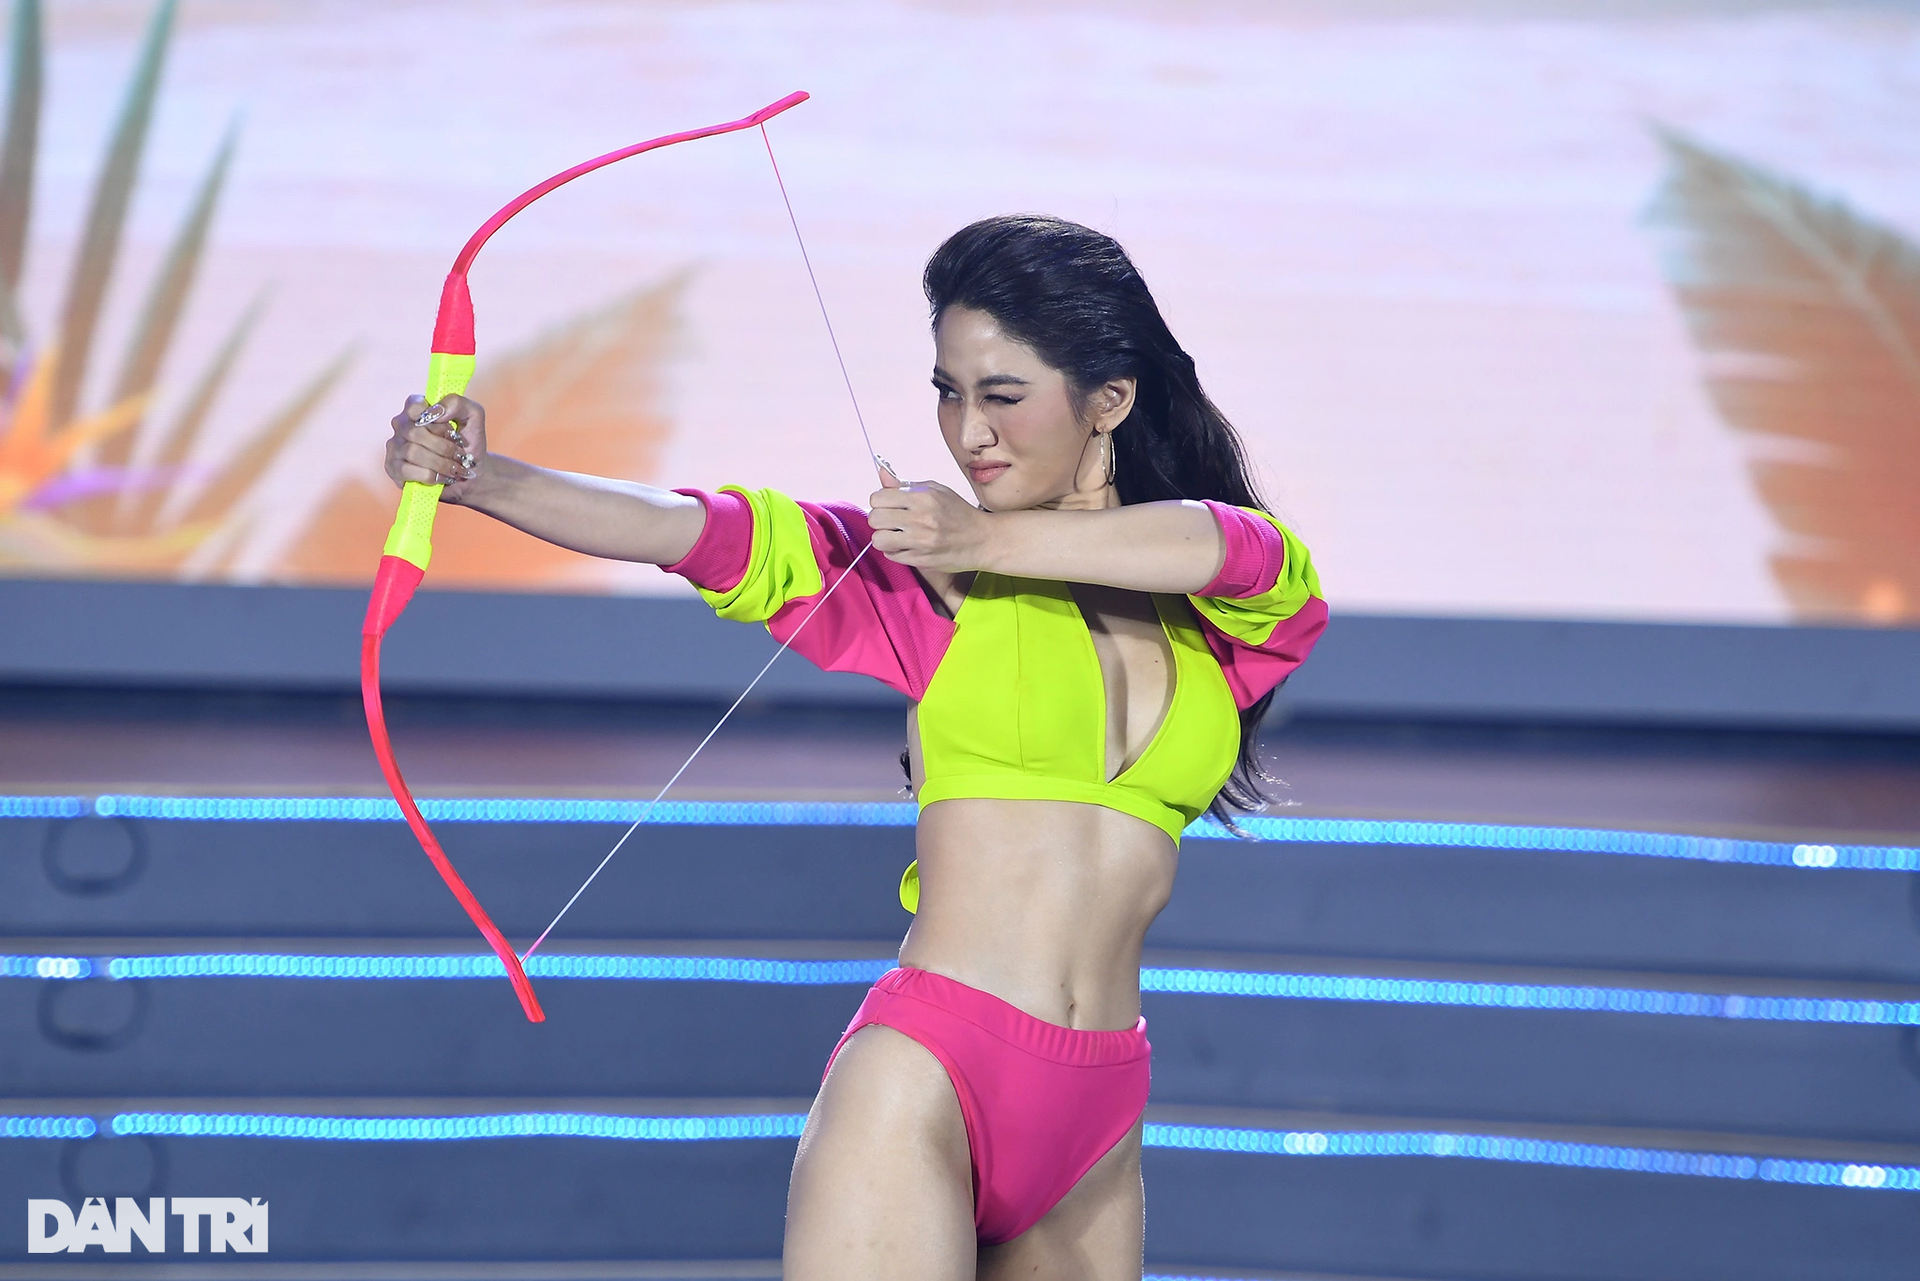 Thân hình bốc lửa của các thí sinh Hoa hậu Thể thao trong phần thi bikini - 8